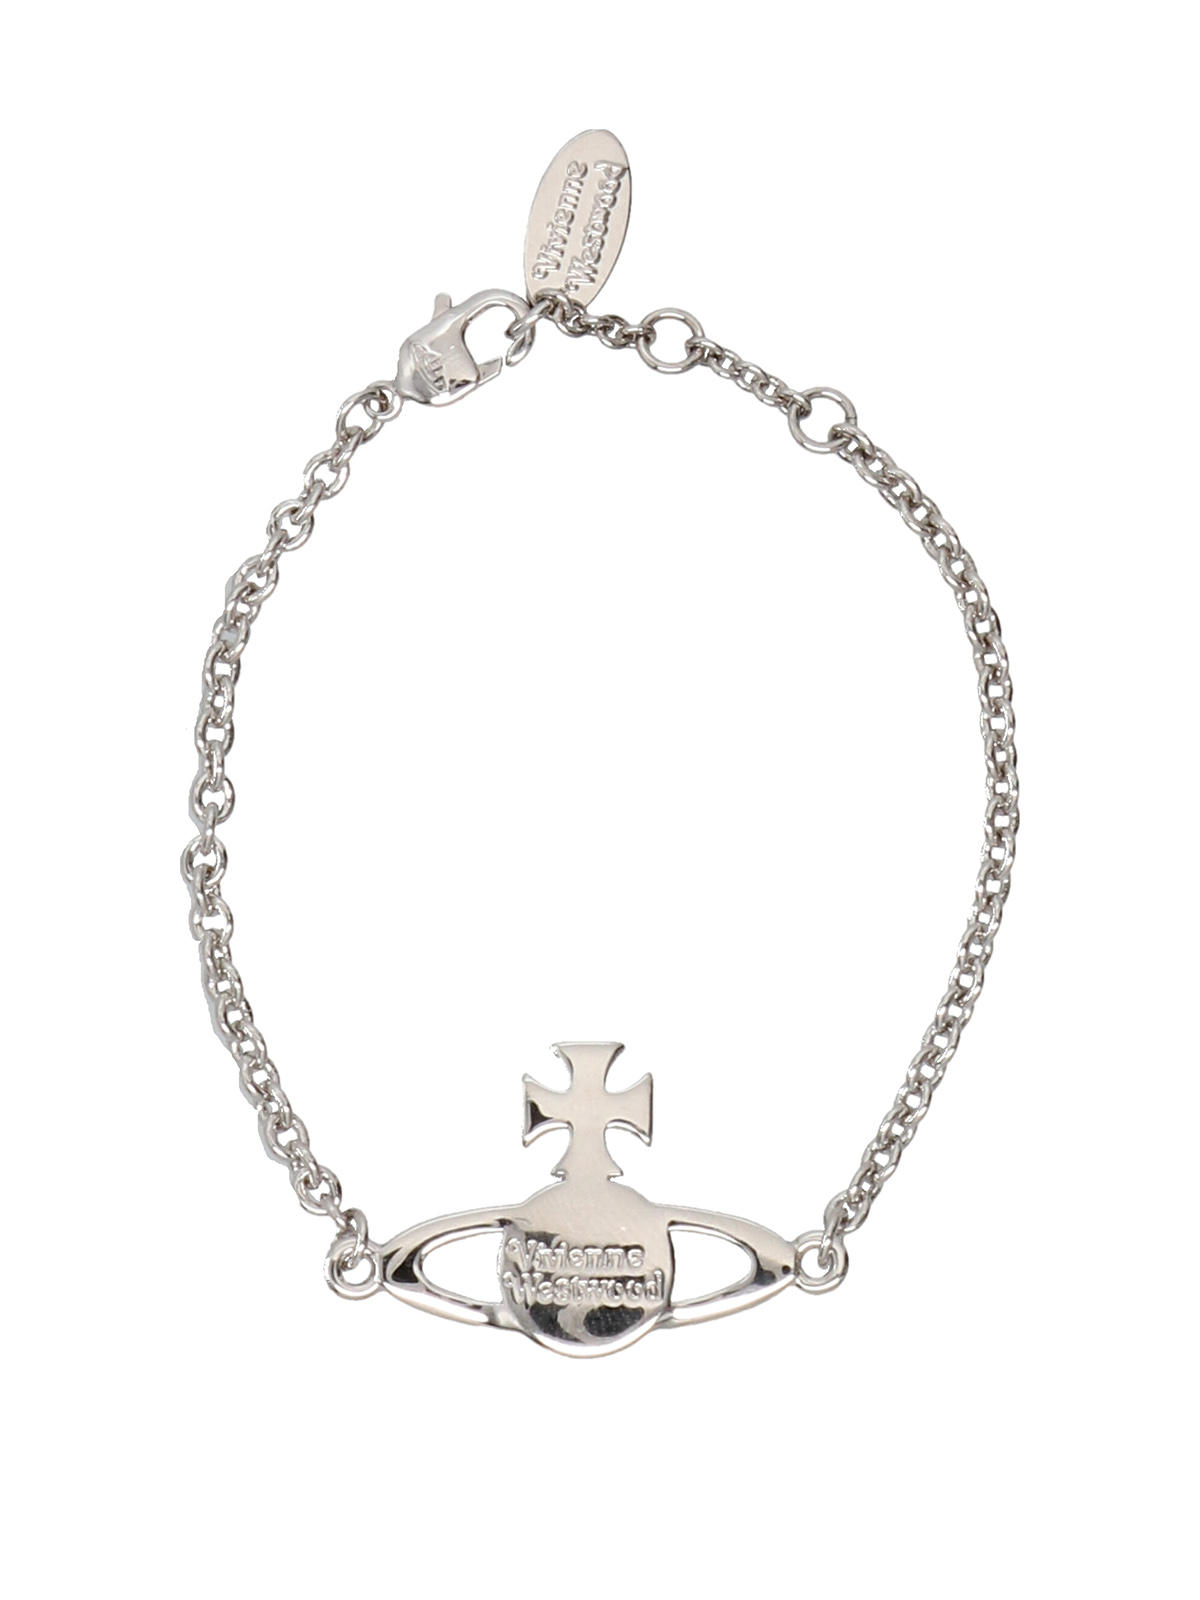 Bracelets & Bangles Vivienne Westwood - Mayfair bracelet ...